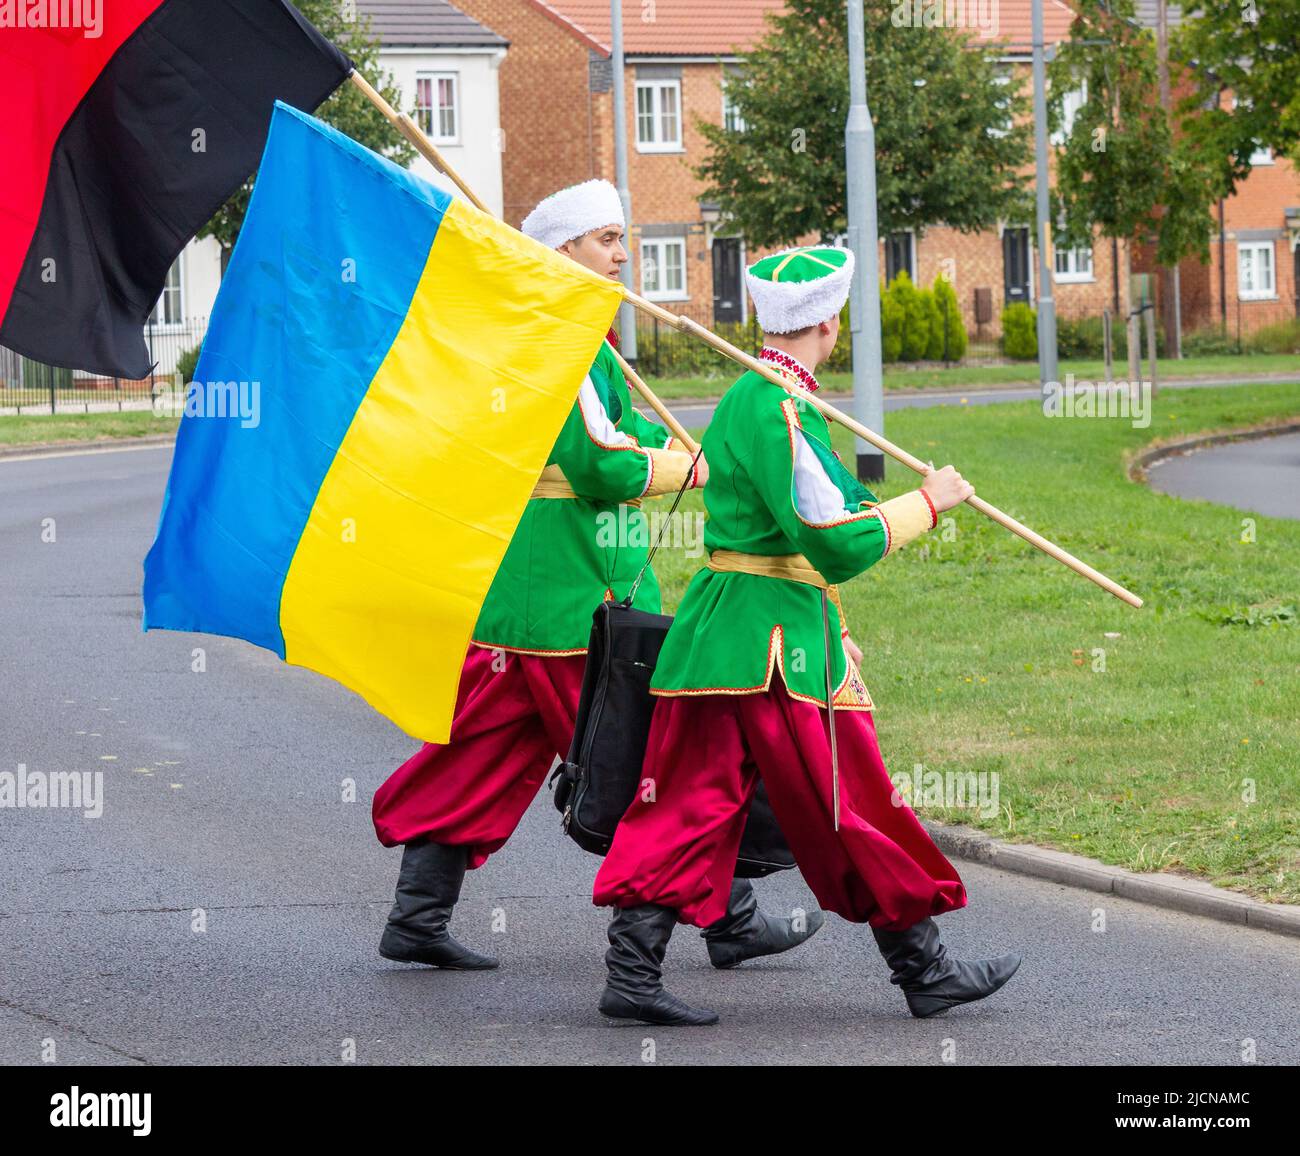 Hombres de grupo de danza Ukranian con vestido tradicional. Una con bandera de Ucrania y otra con bandera del Ejército insurgente de Ucrania ( negro y rojo ). Foto de stock